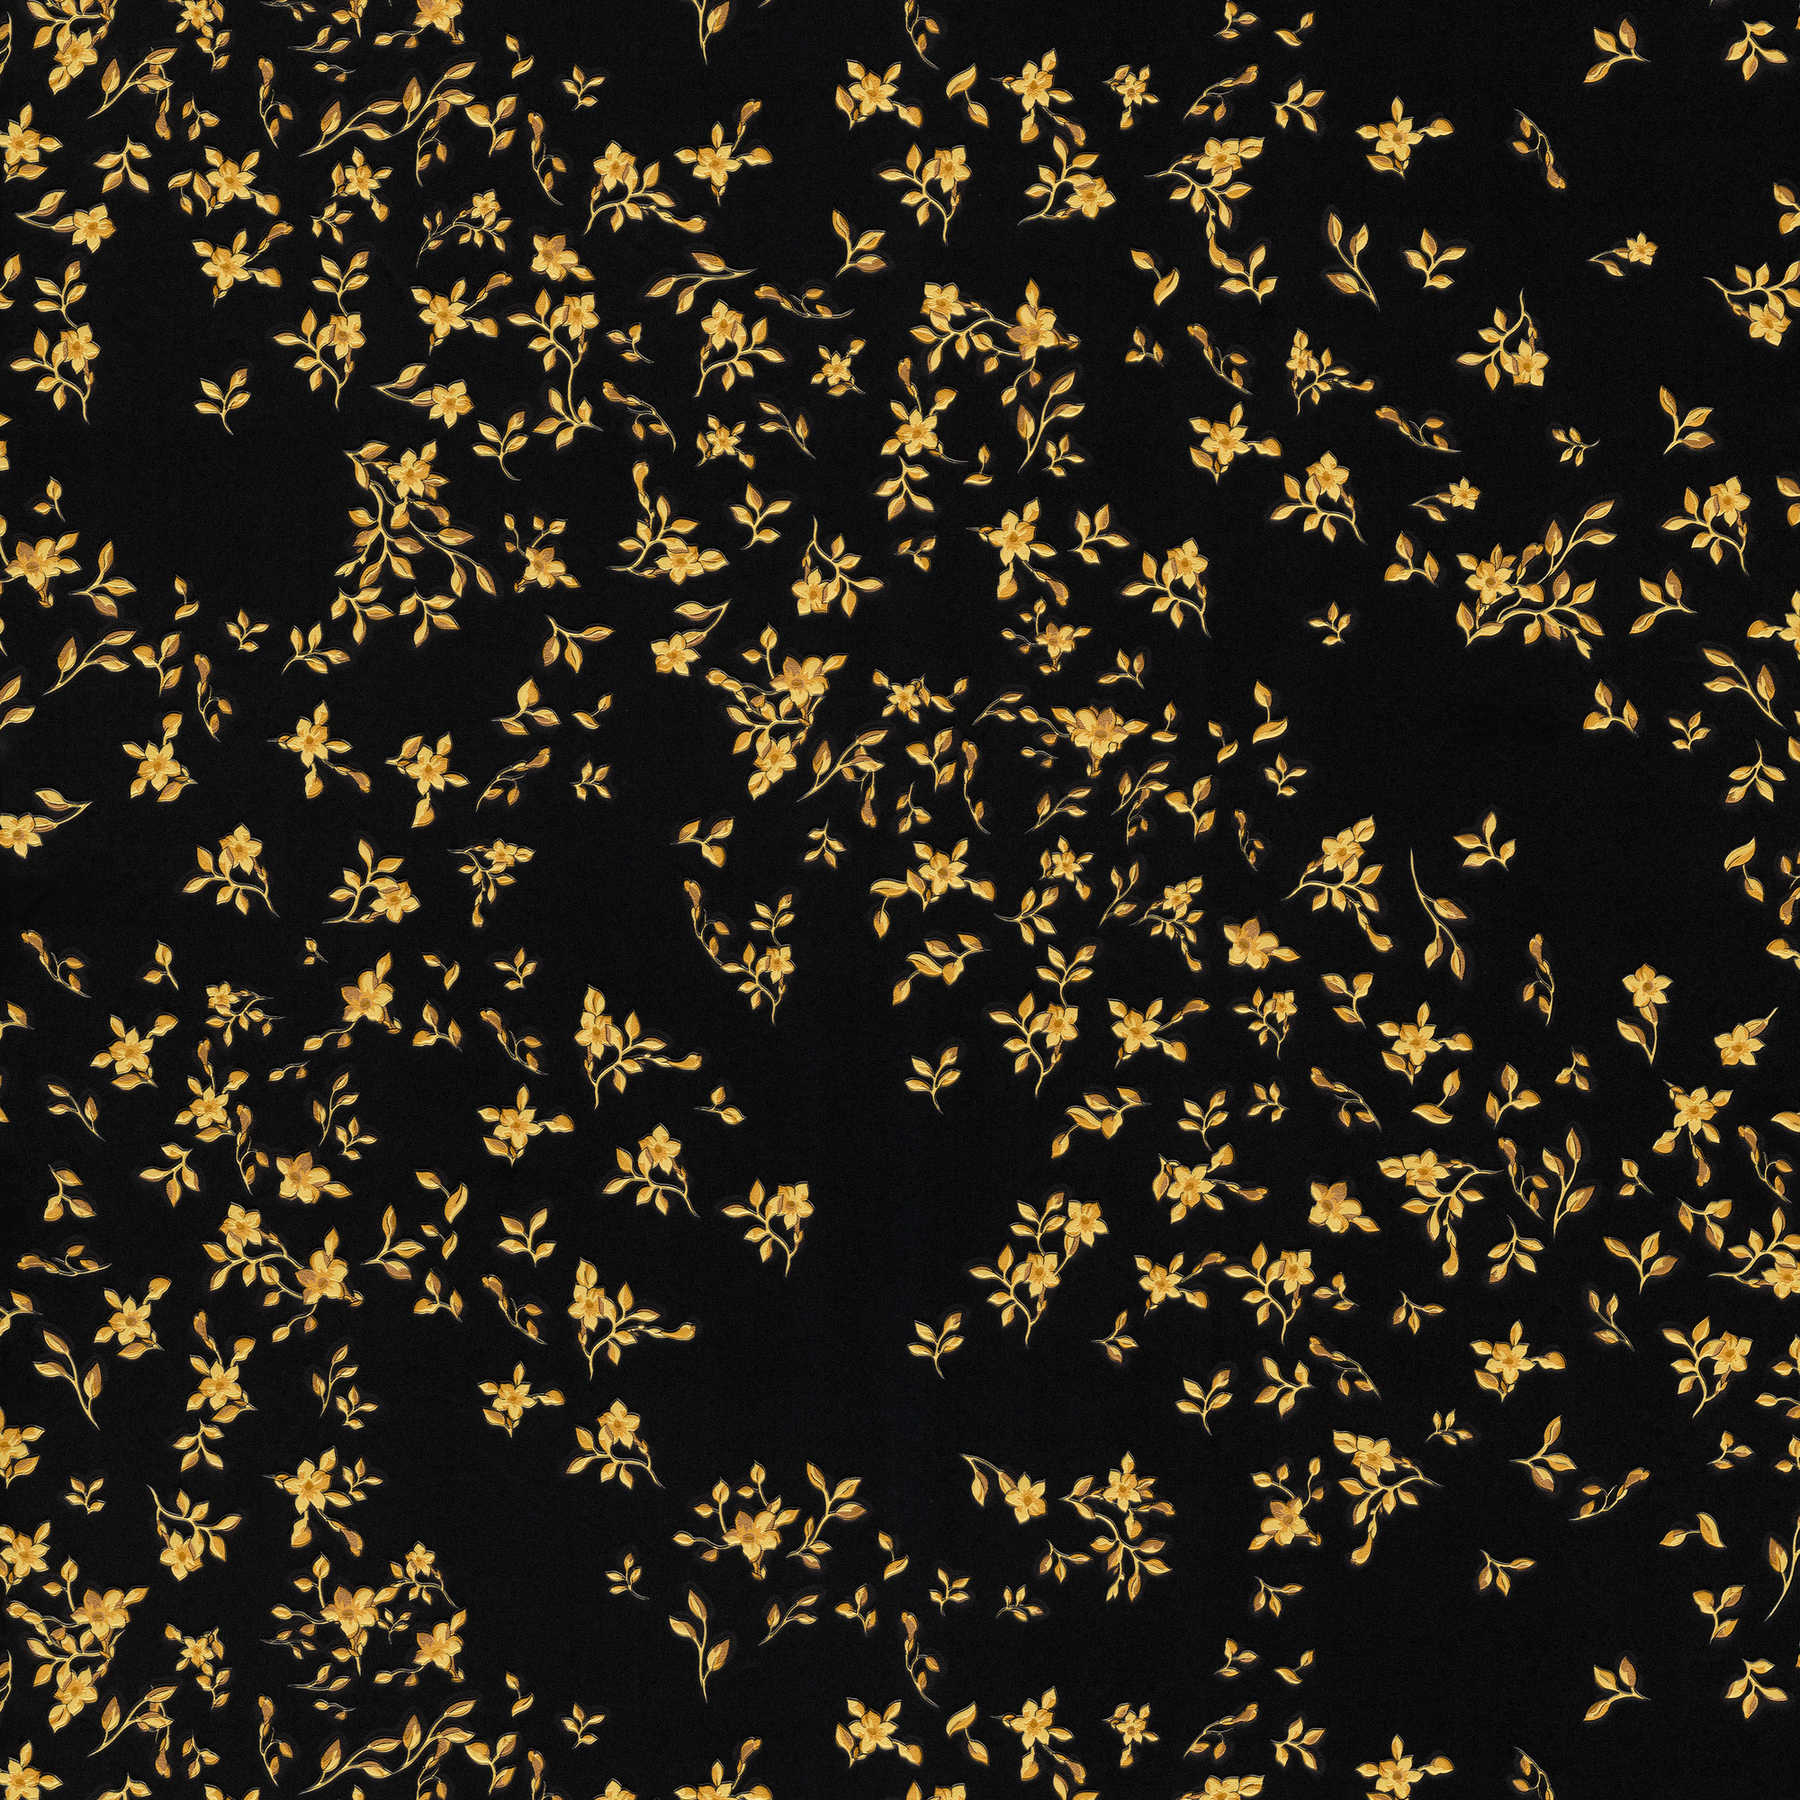 Black VERSACE wallpaper in floral design - Black, Gold
